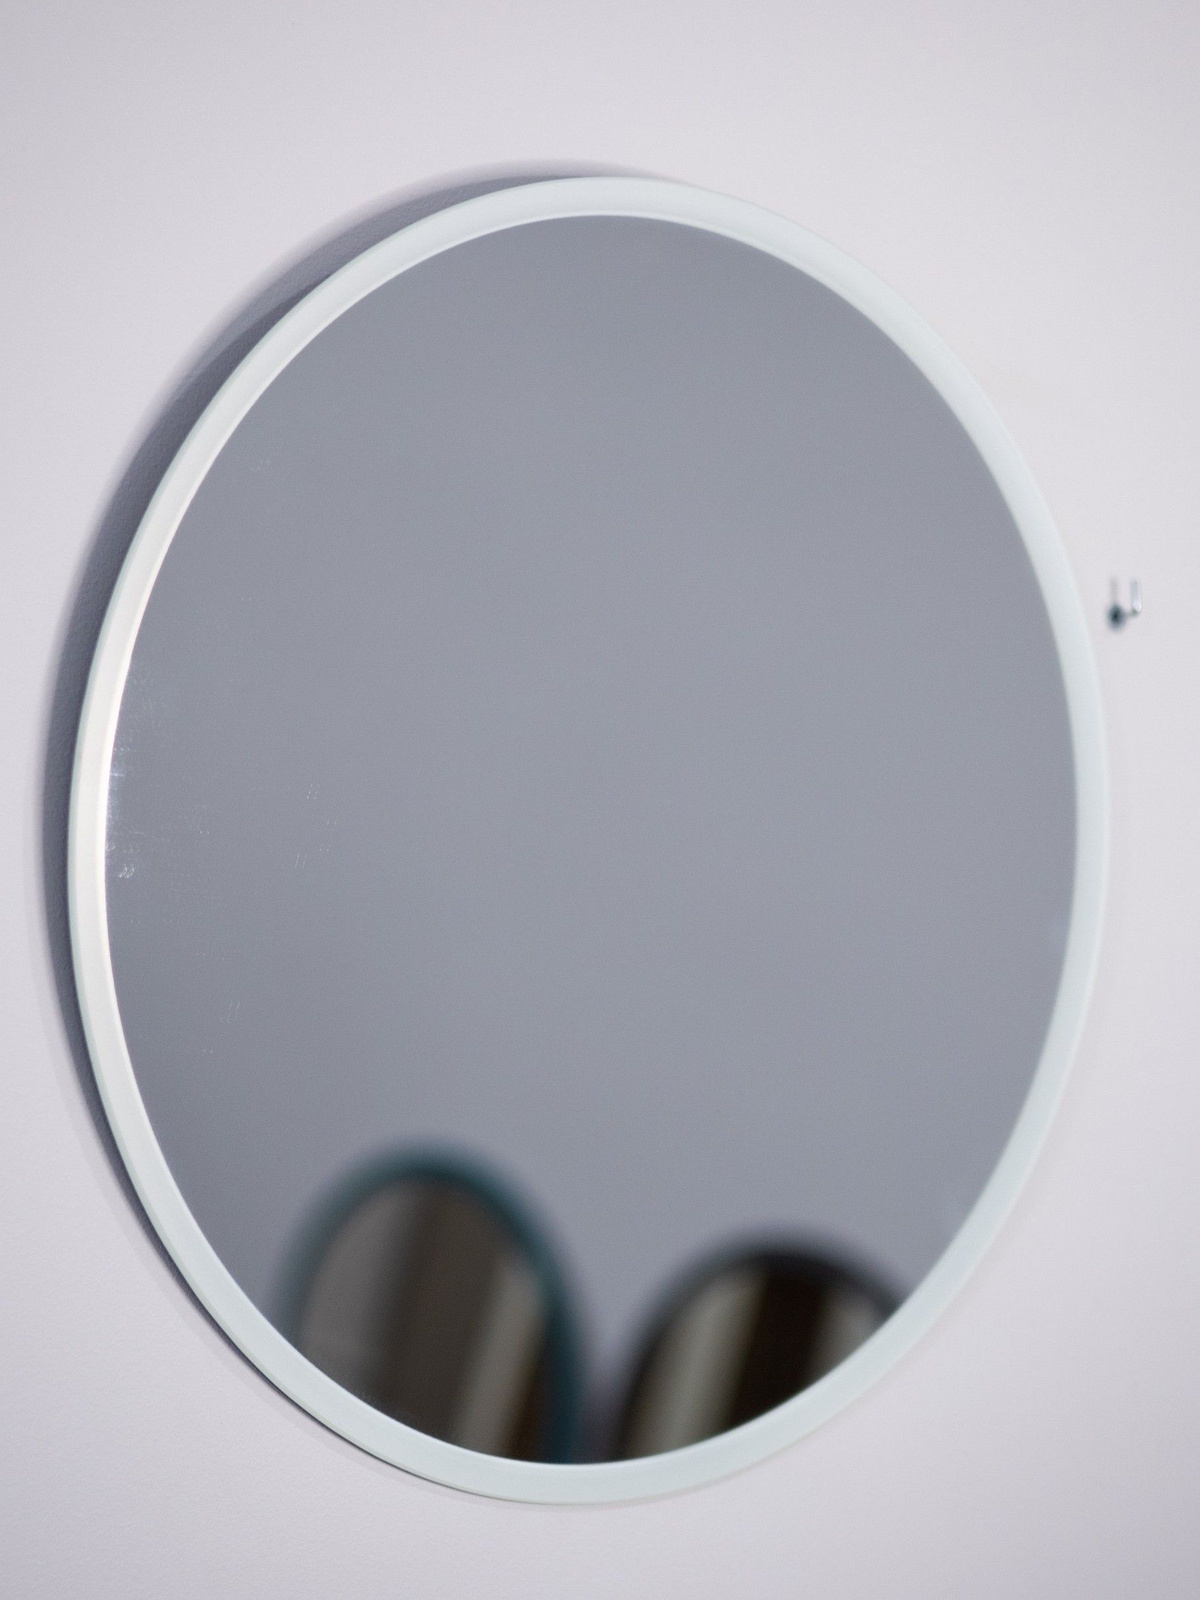 Окантовка методом УФ 3Д печати, визуально выделяет белую рамку на зеркале. Рамка не смотрится массивно по сравнению с дополнительно наклеенными материалами (рама). Крепления входят в комплект, установка простая.